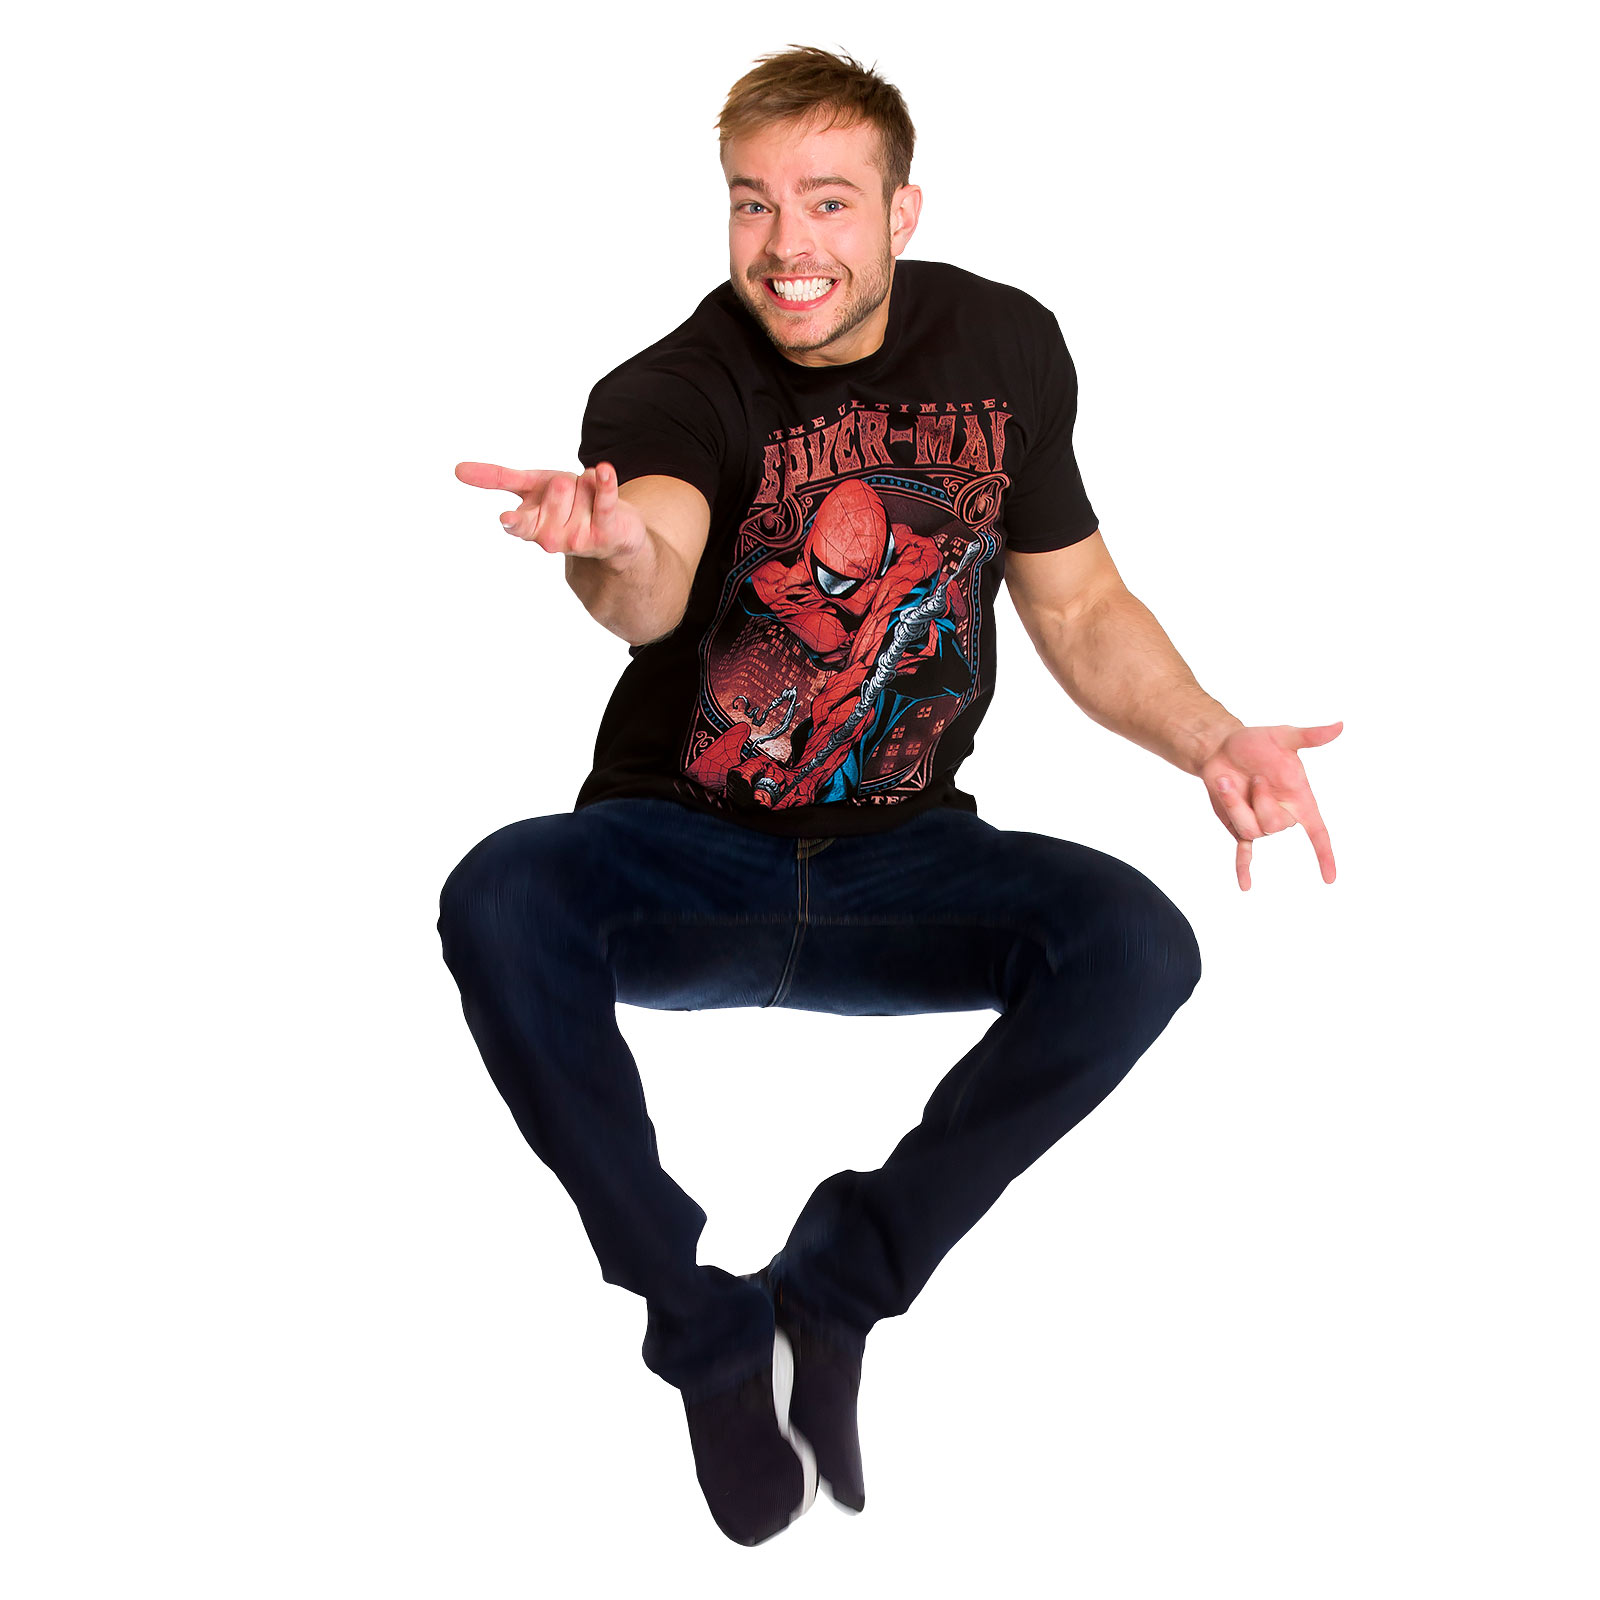 Spider-Man - Greatest Super Hero T-Shirt schwarz